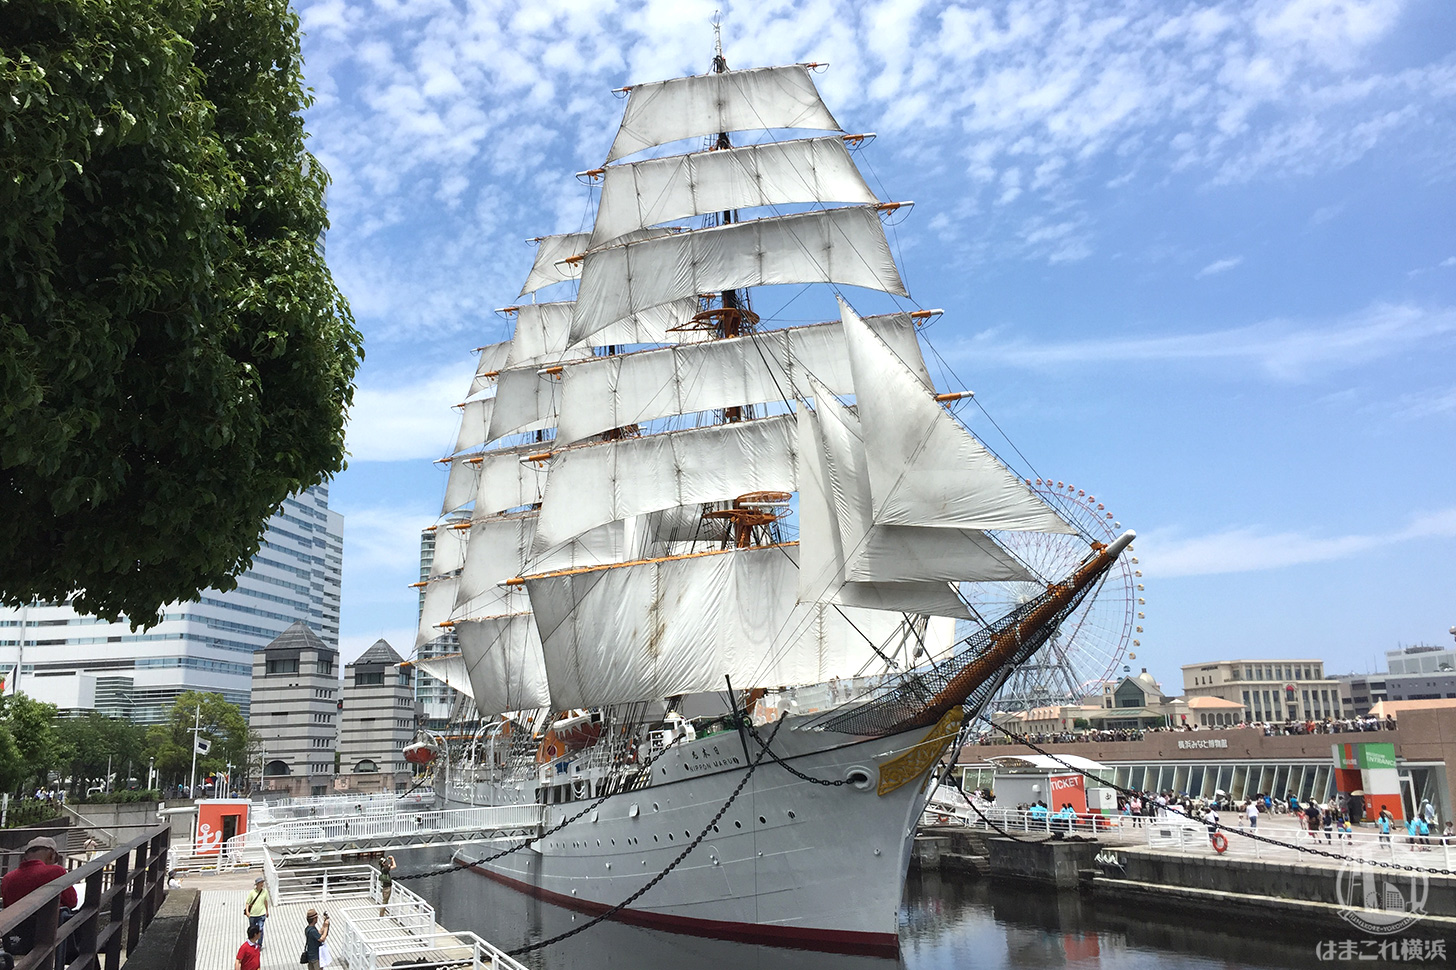 日本丸メモリアルパーク（帆船日本丸・横浜みなと博物館） | はまこれ横浜